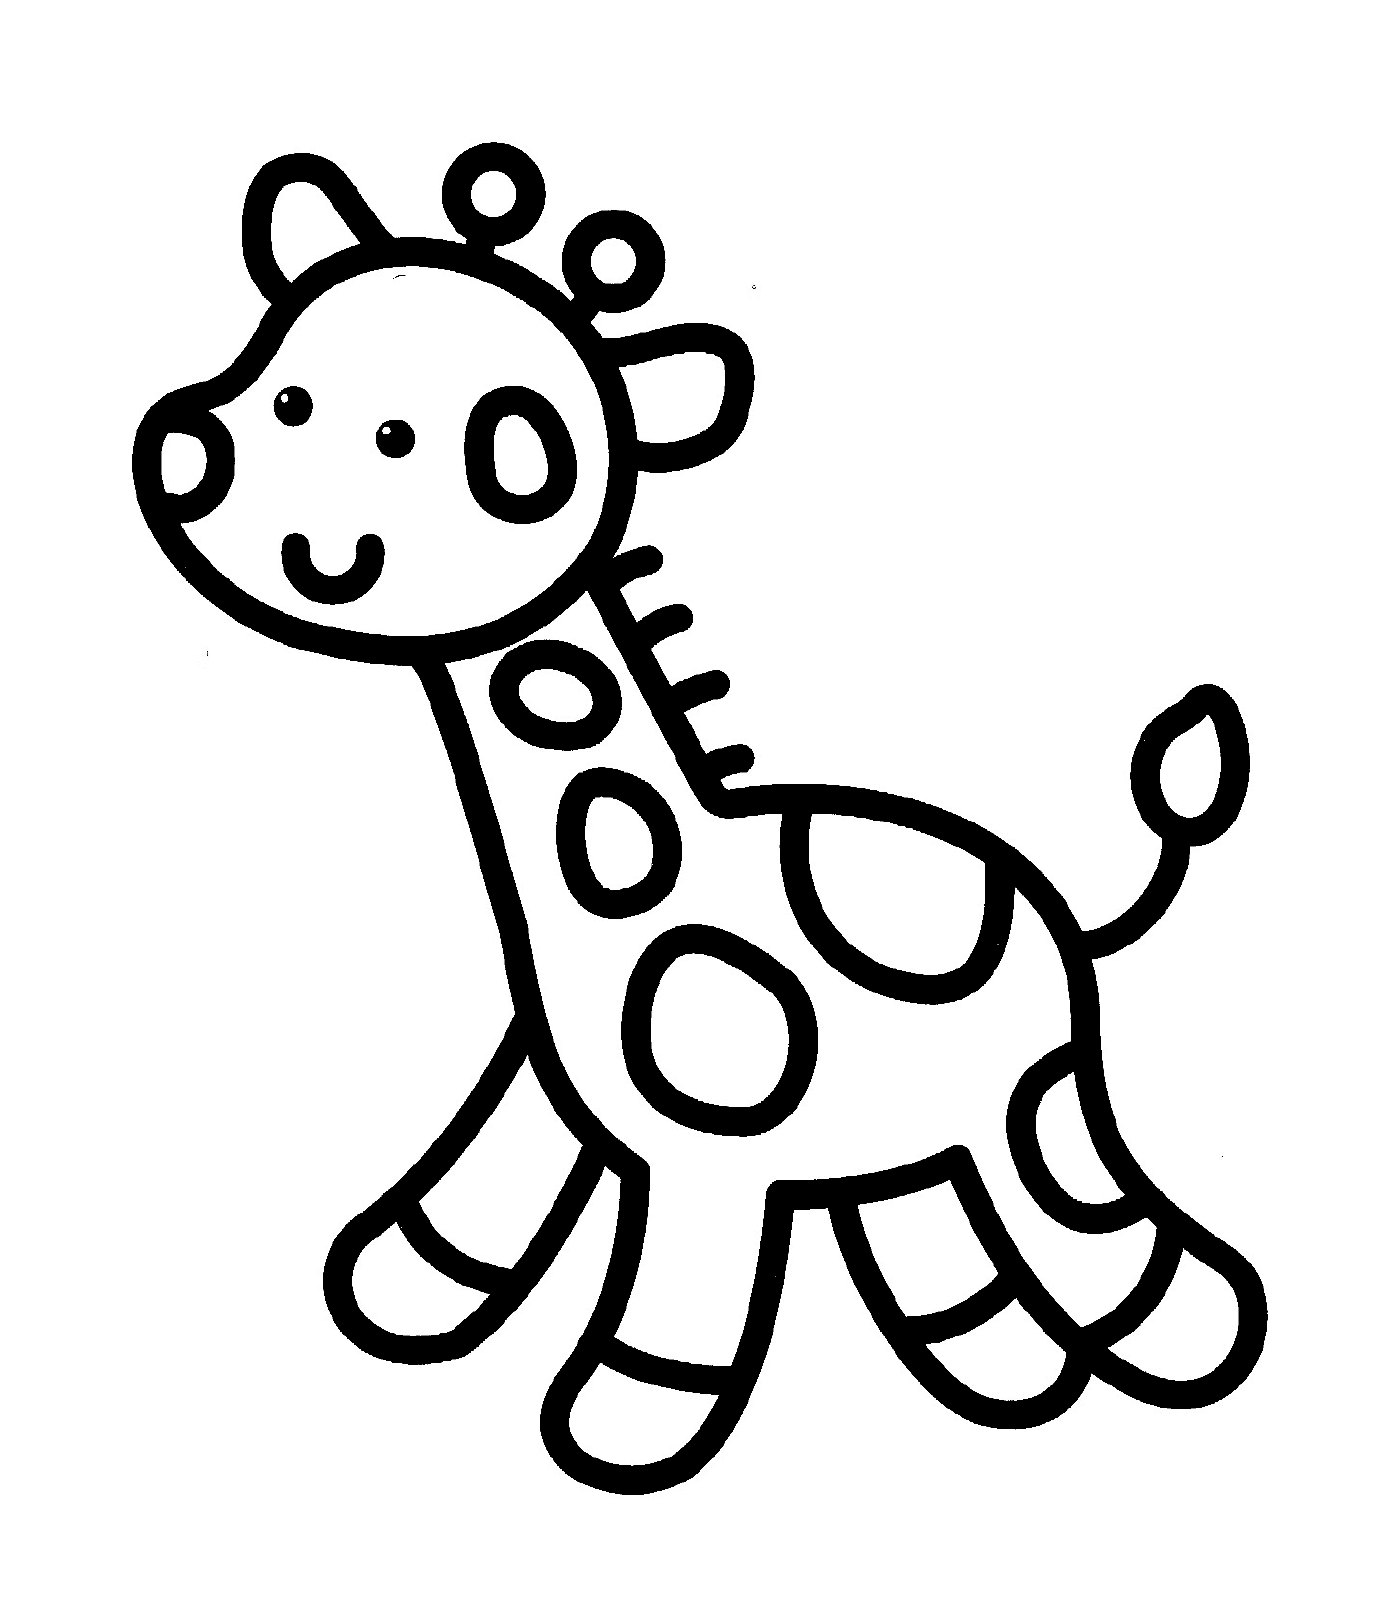  Una giraffa facile da disegnare per i bambini dell'asilo 